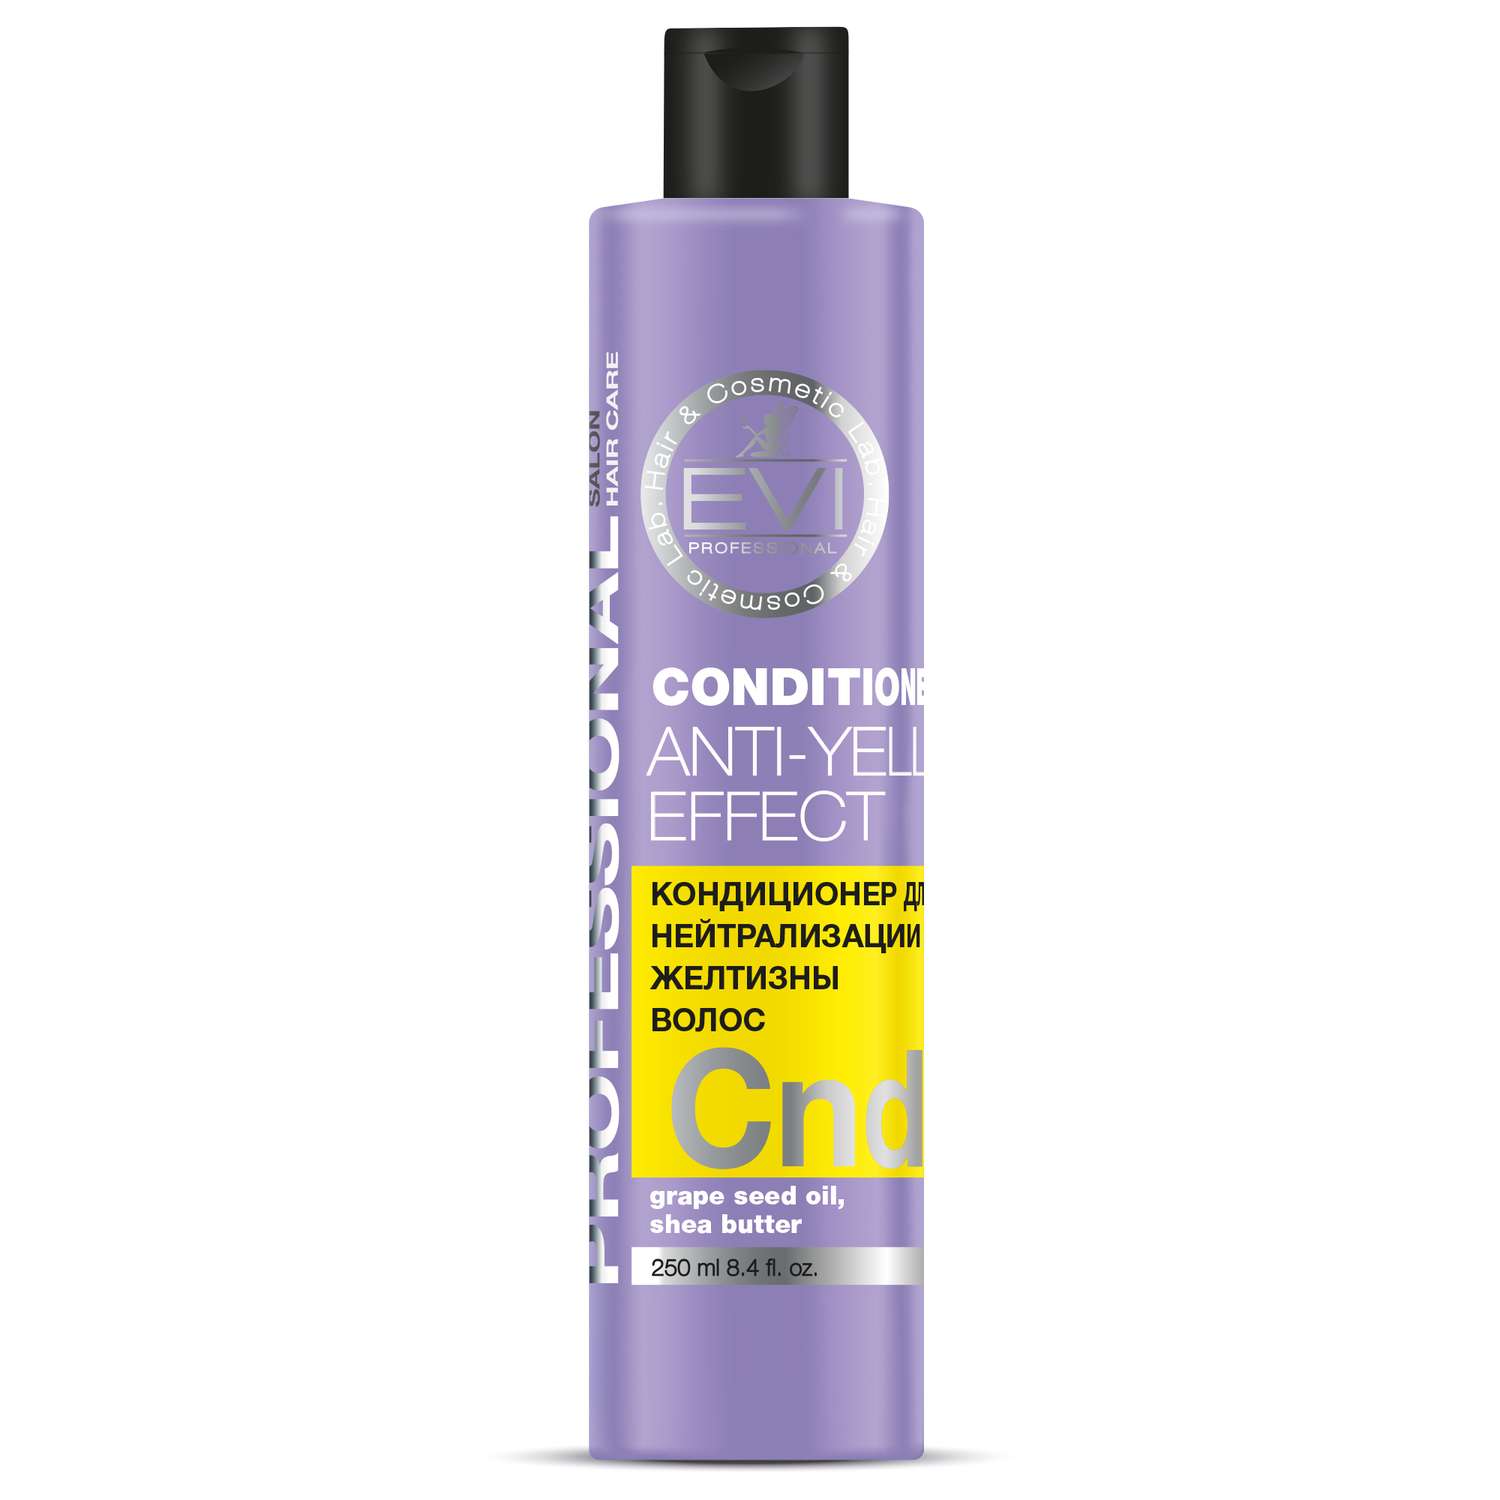 Кондиционер Evi Professional Серебристый для нейтрализации желтизны волос - фото 1